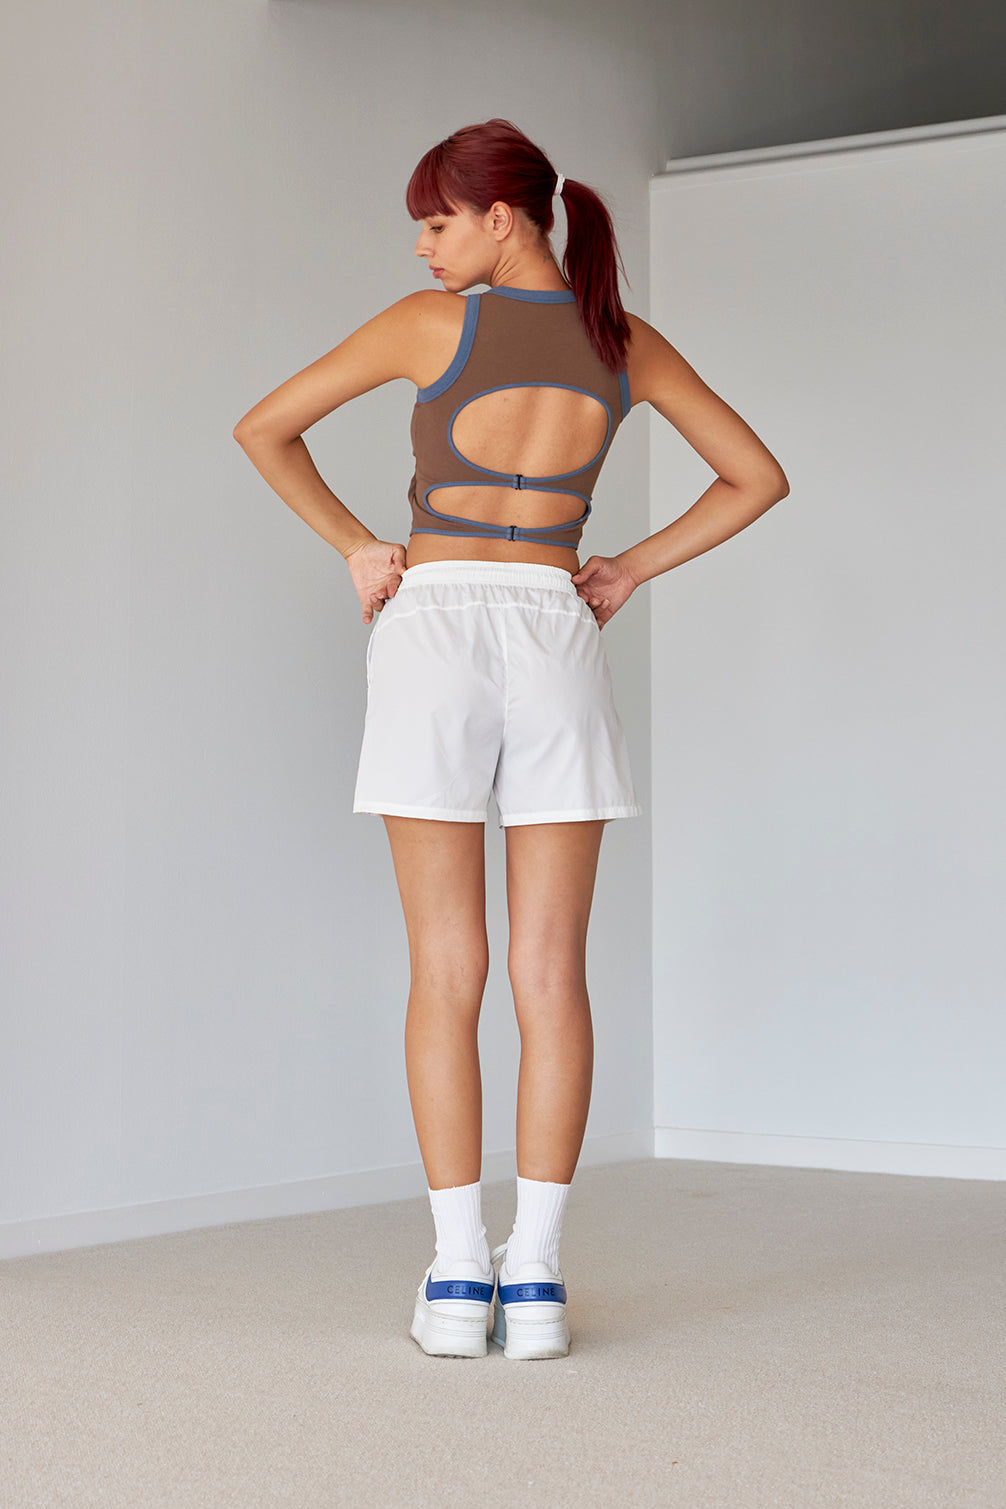 TW Yoga Nylon Sheer Shorts